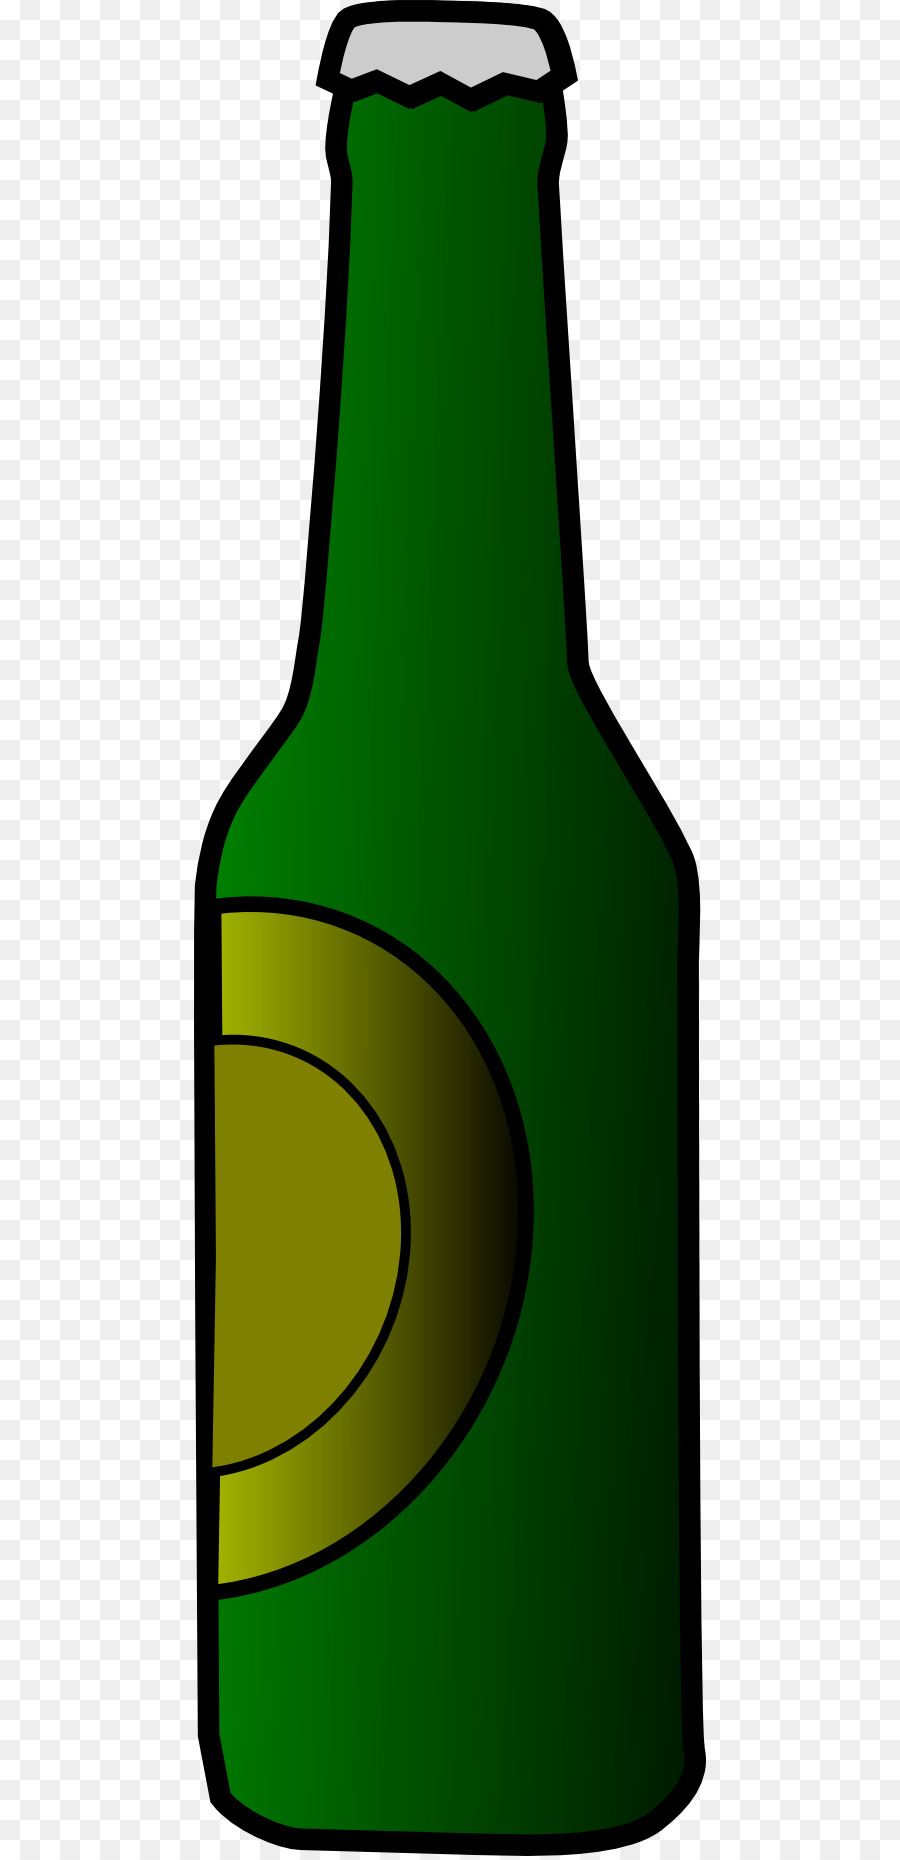 Beer bottle Water Bottles Clip art - Liquor Bottle Cliparts png download - 512*1856 - Free Transparent Beer png Download.